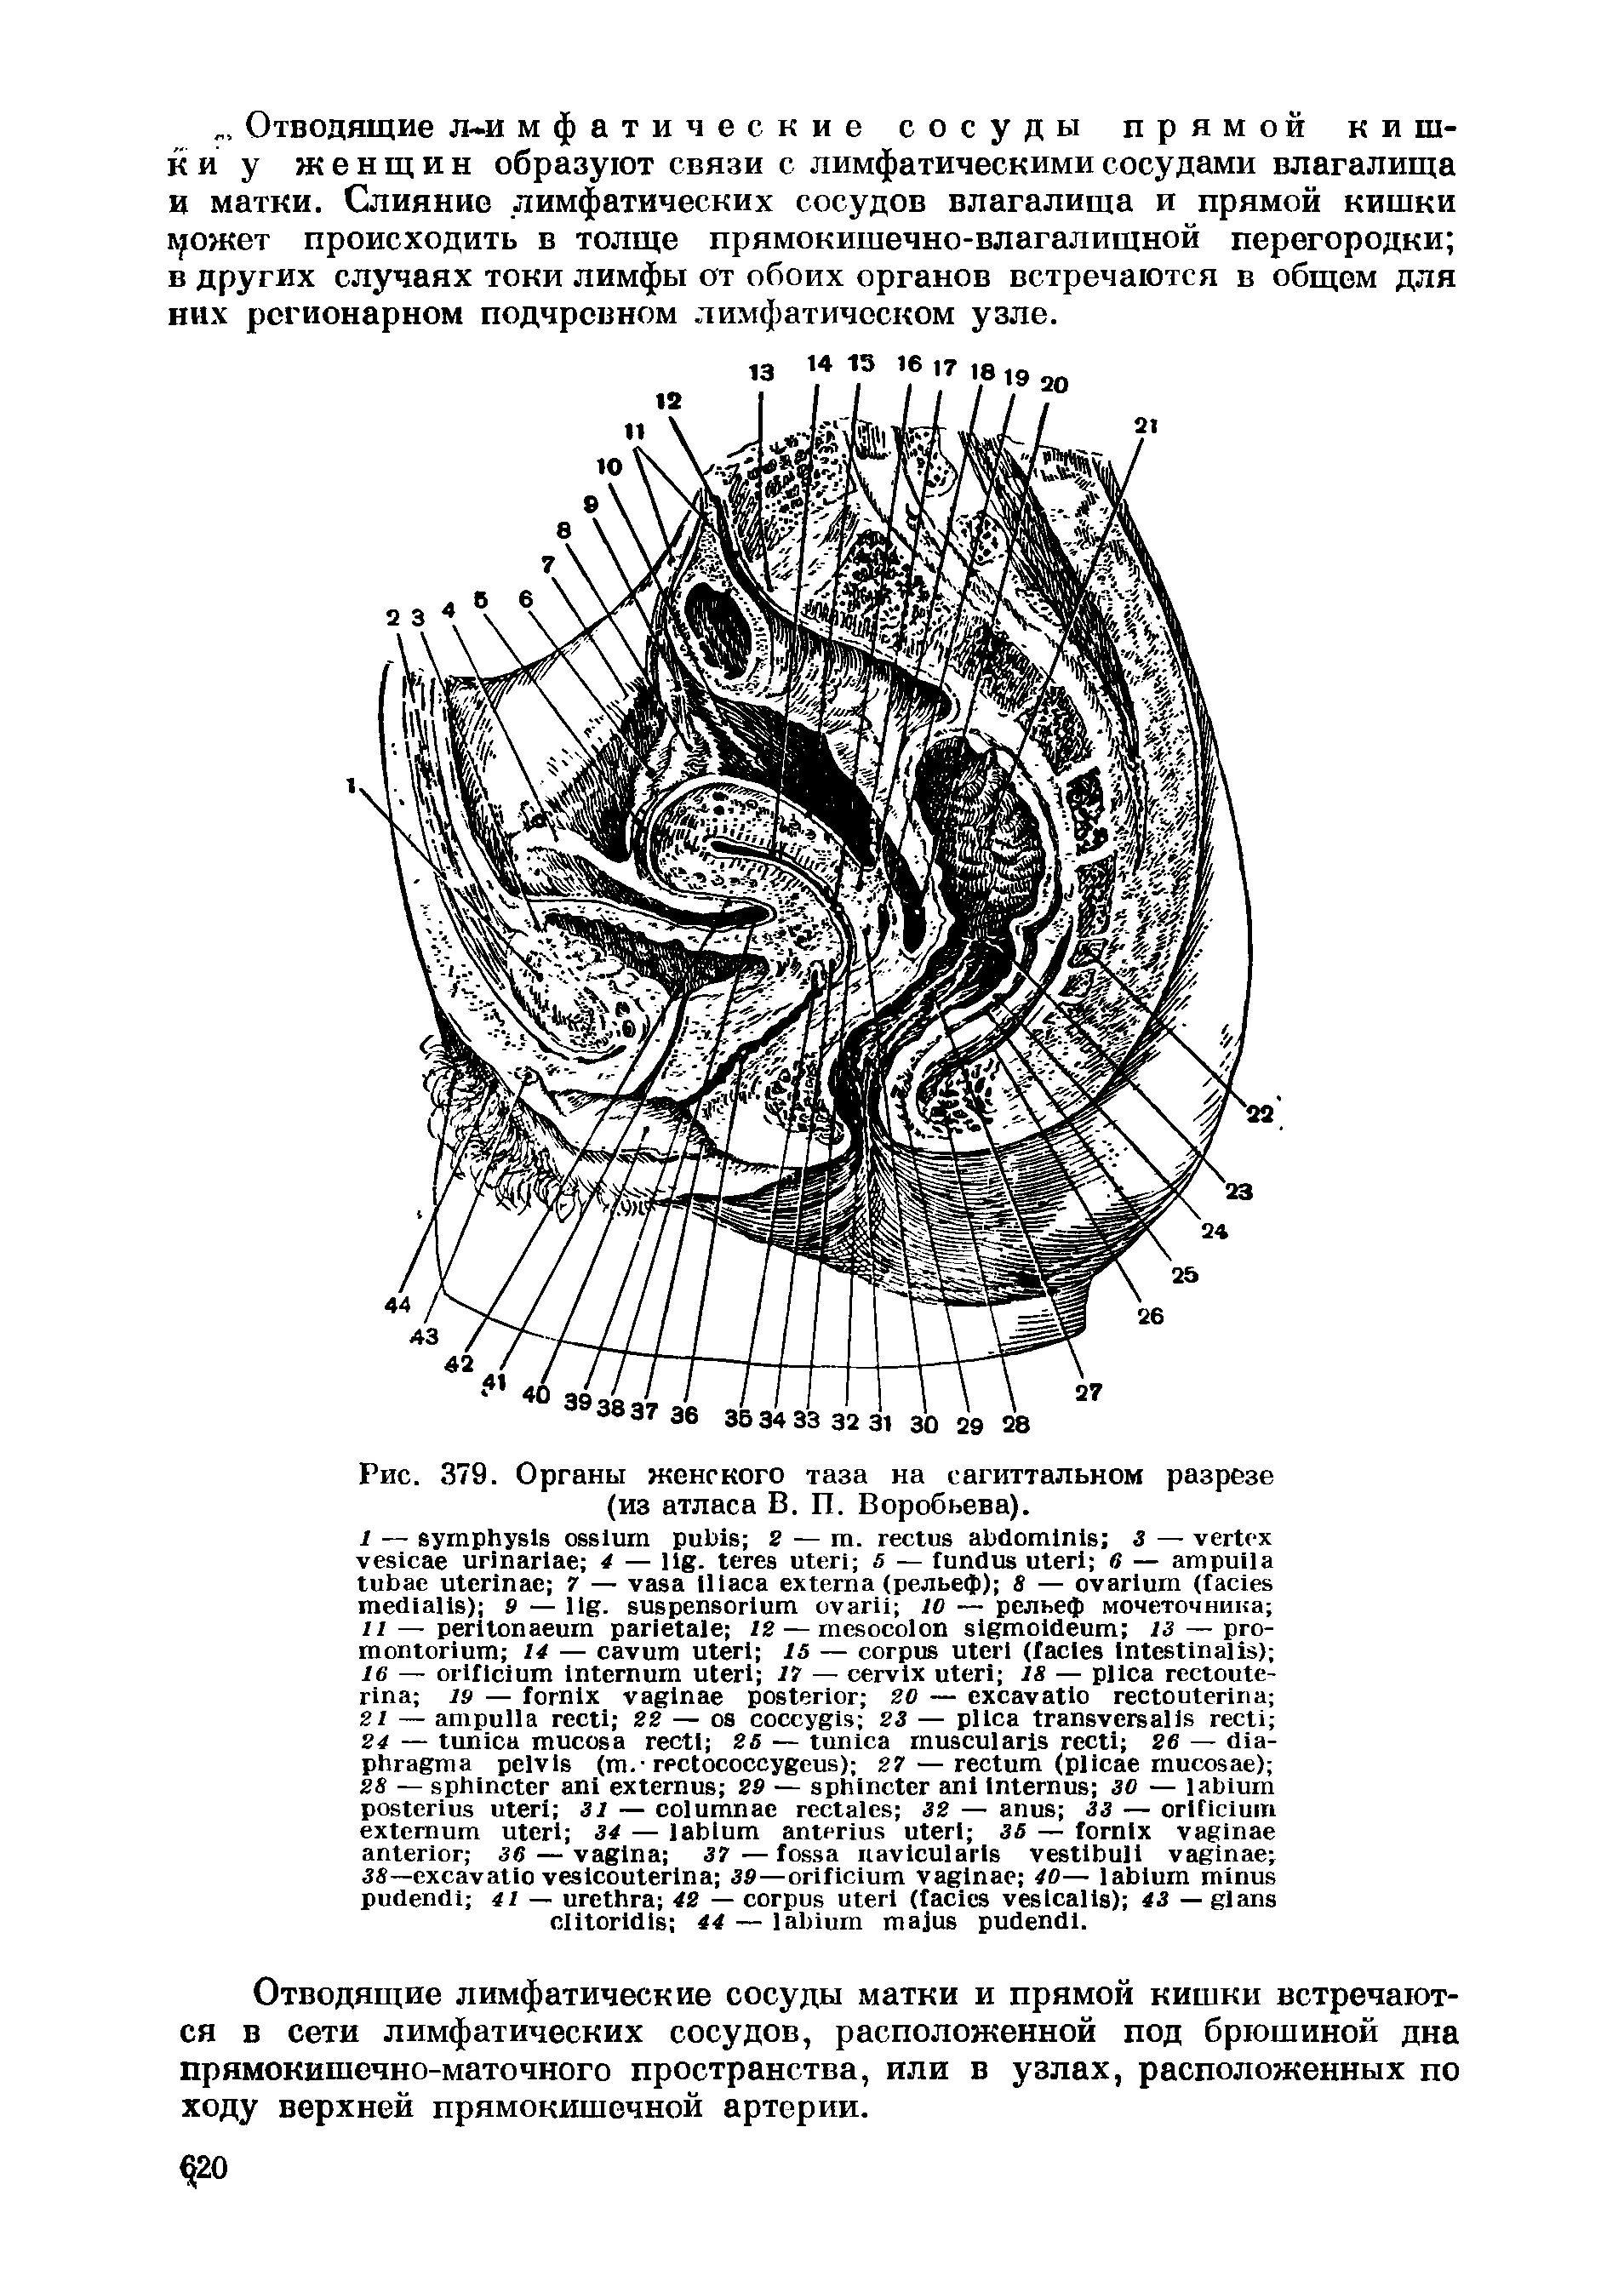 Рис. 379. Органы женского таза на сагиттальном разрезе (из атласа В. П. Воробьева).